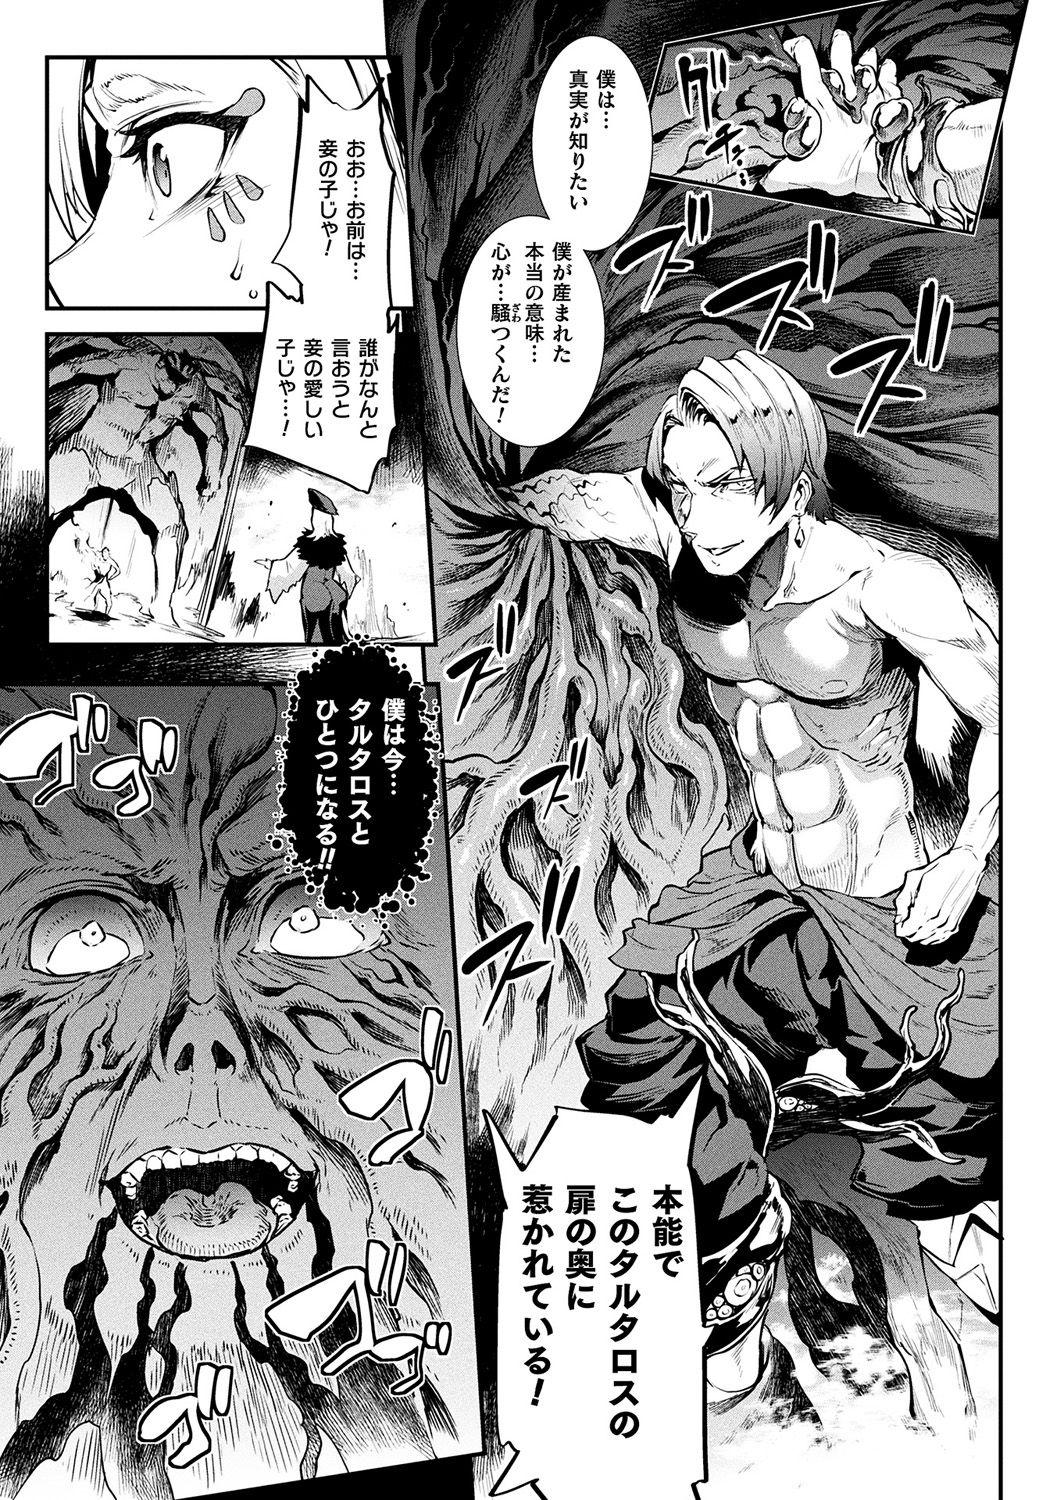 [Erect Sawaru] Raikou Shinki Igis Magia II -PANDRA saga 3rd ignition- + Denshi Shoseki Tokuten Digital Poster [Digital] 150